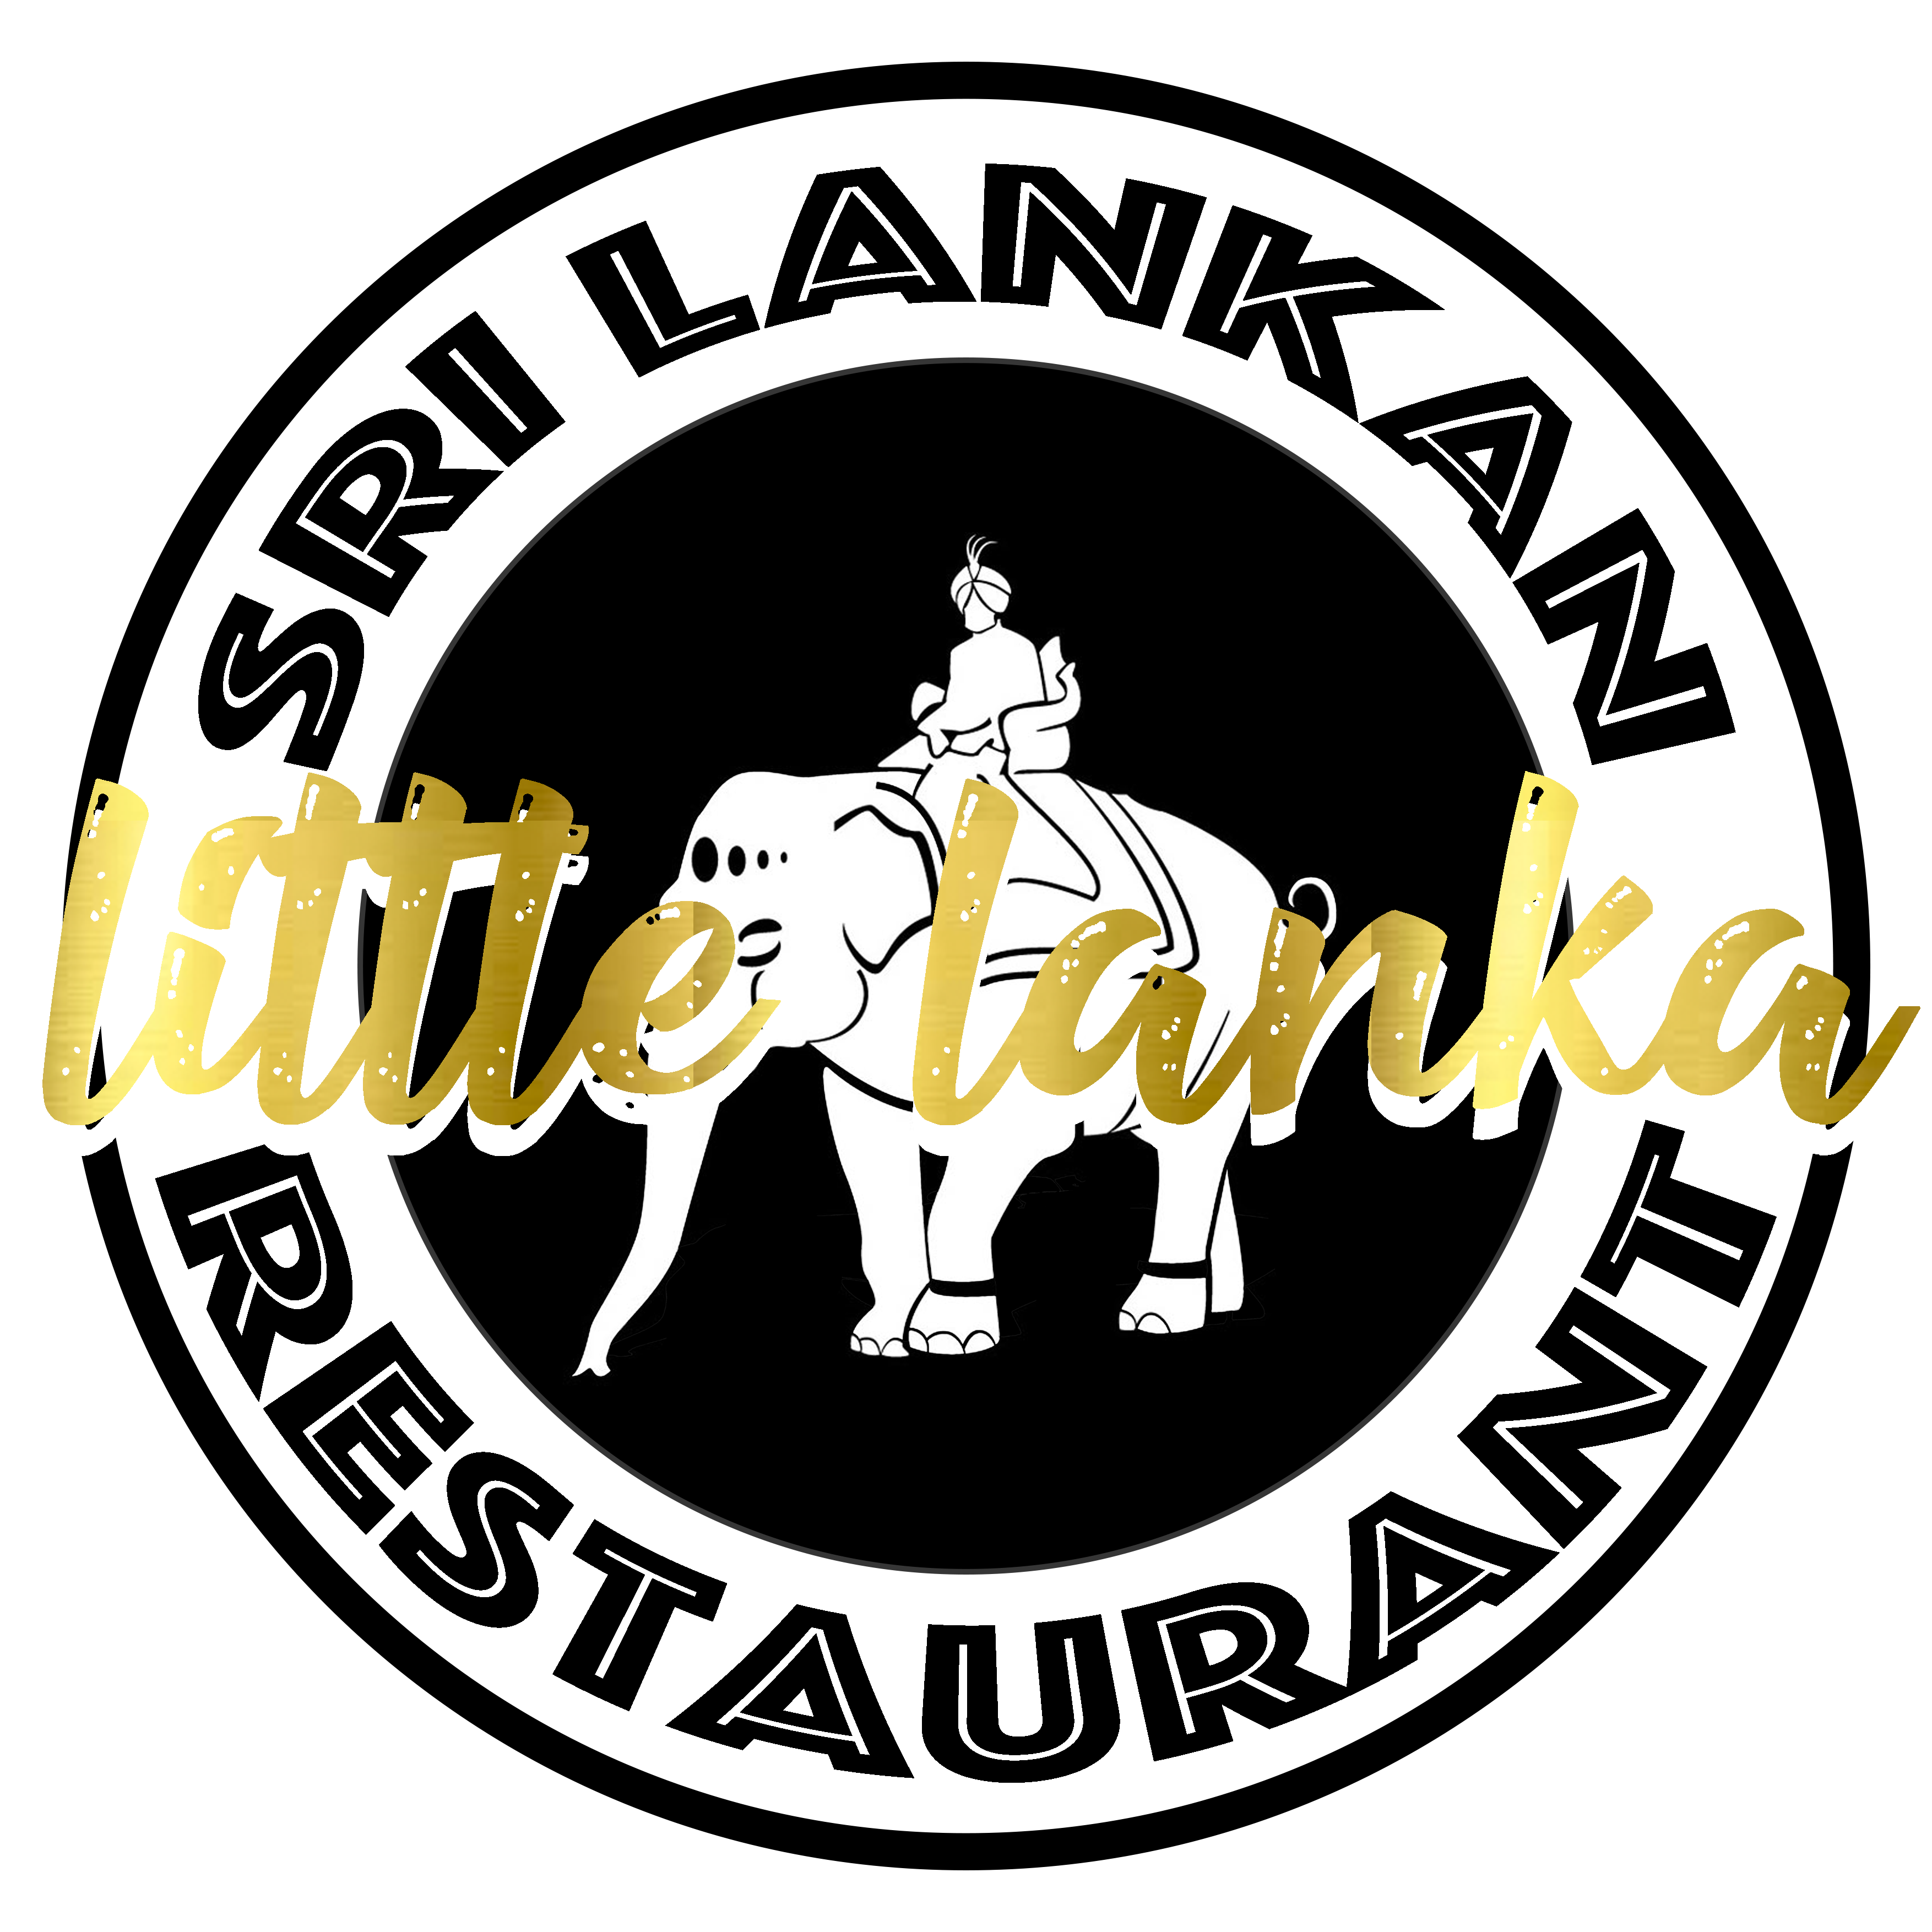 Little Lanka